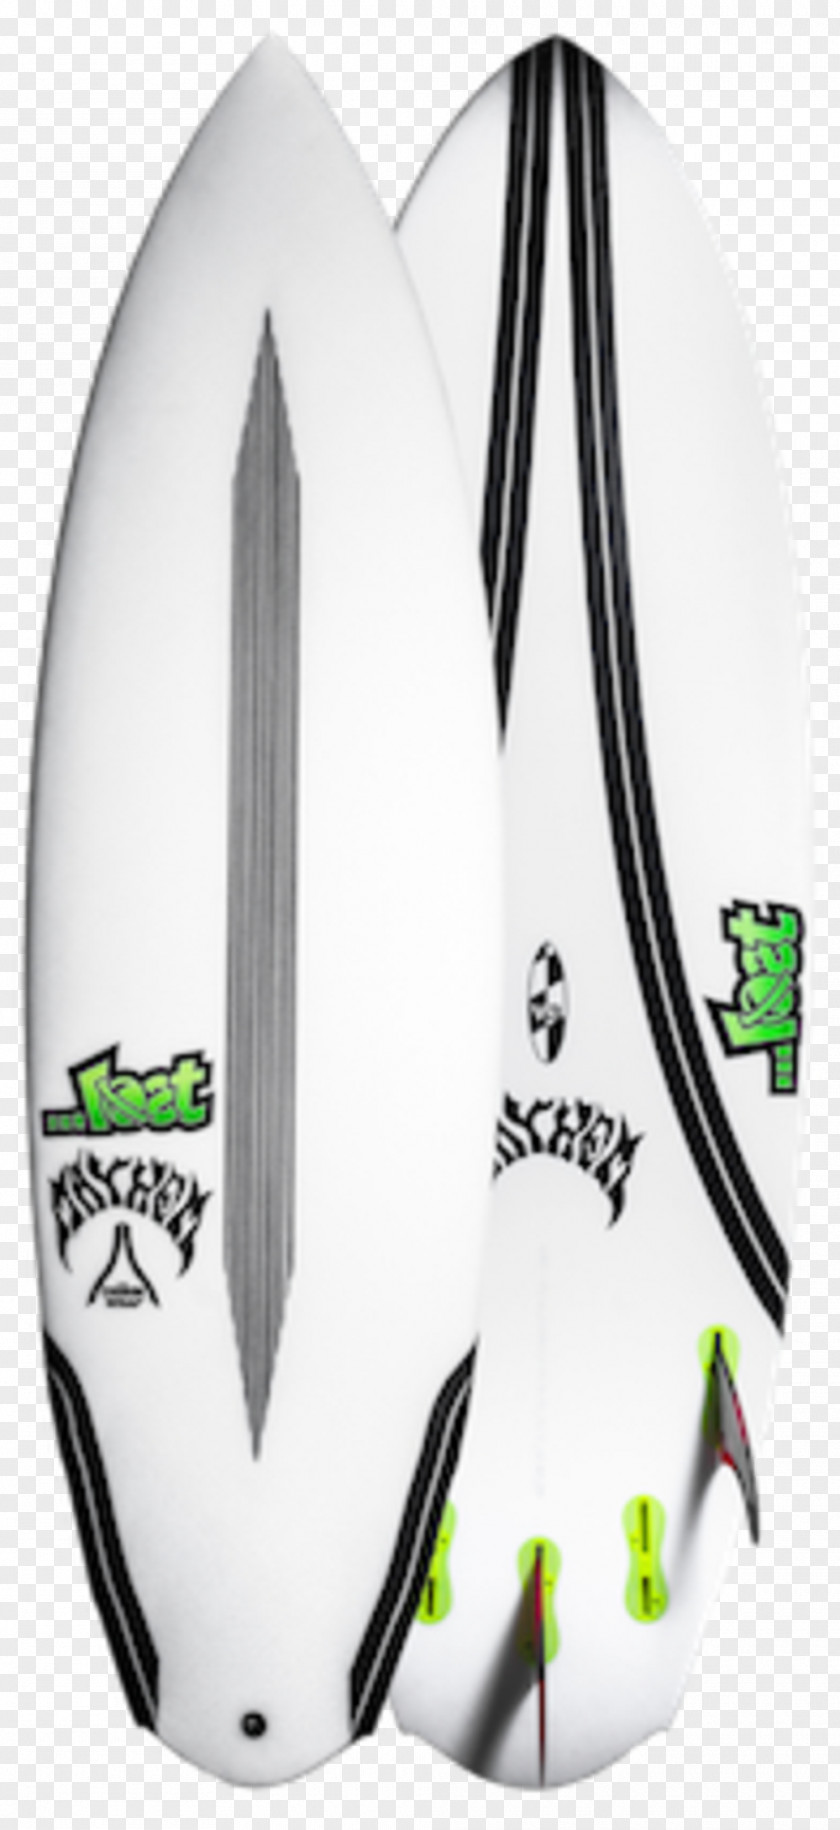 Surfboard Shaper Surfing Epoxy Rocket PNG